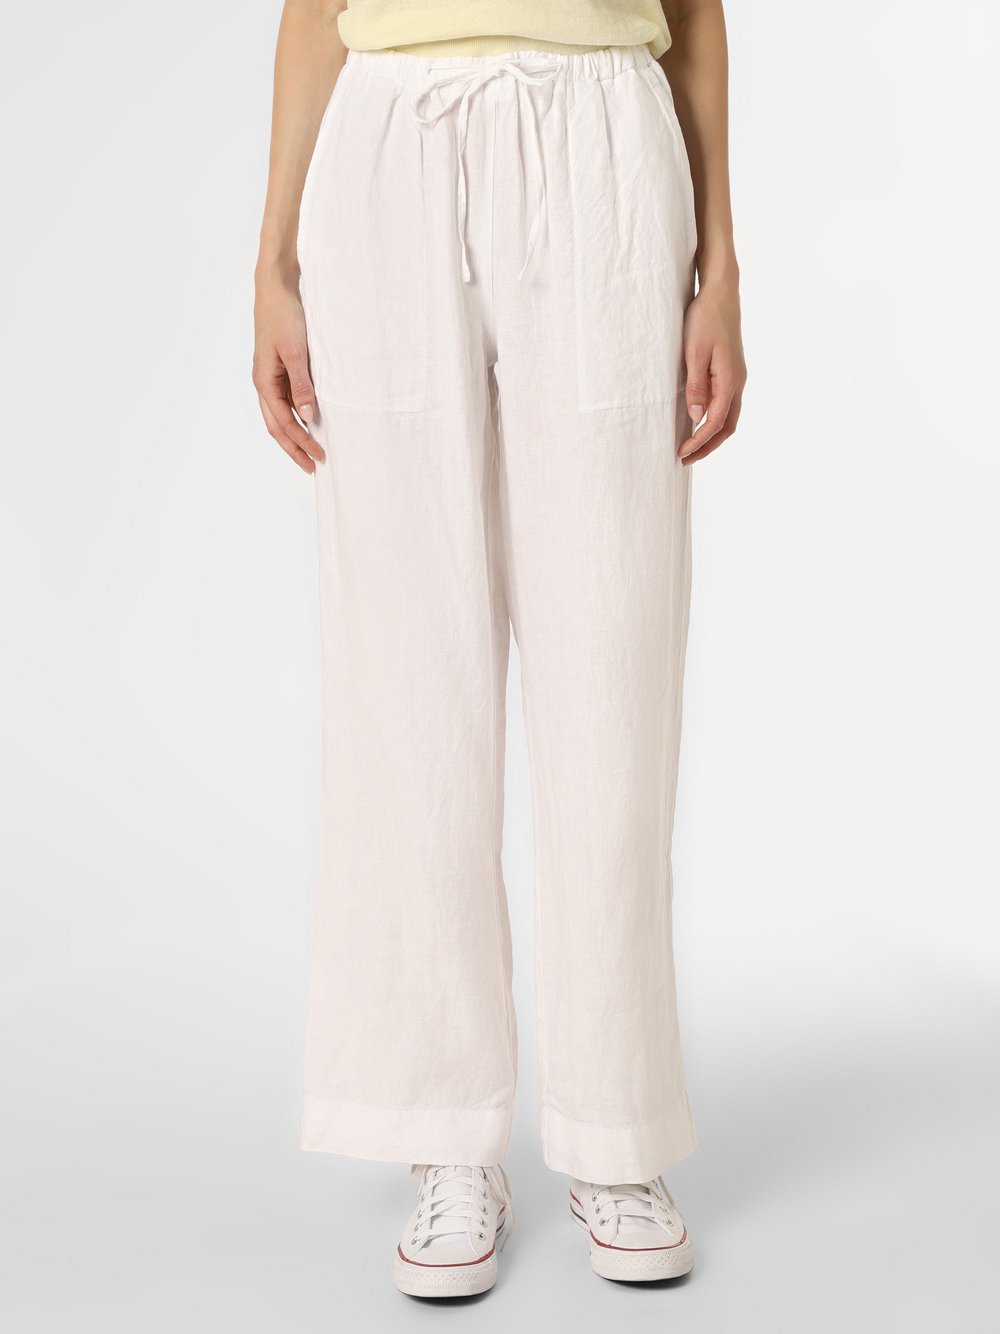 Marc O'Polo - Damskie spodnie lniane, biały